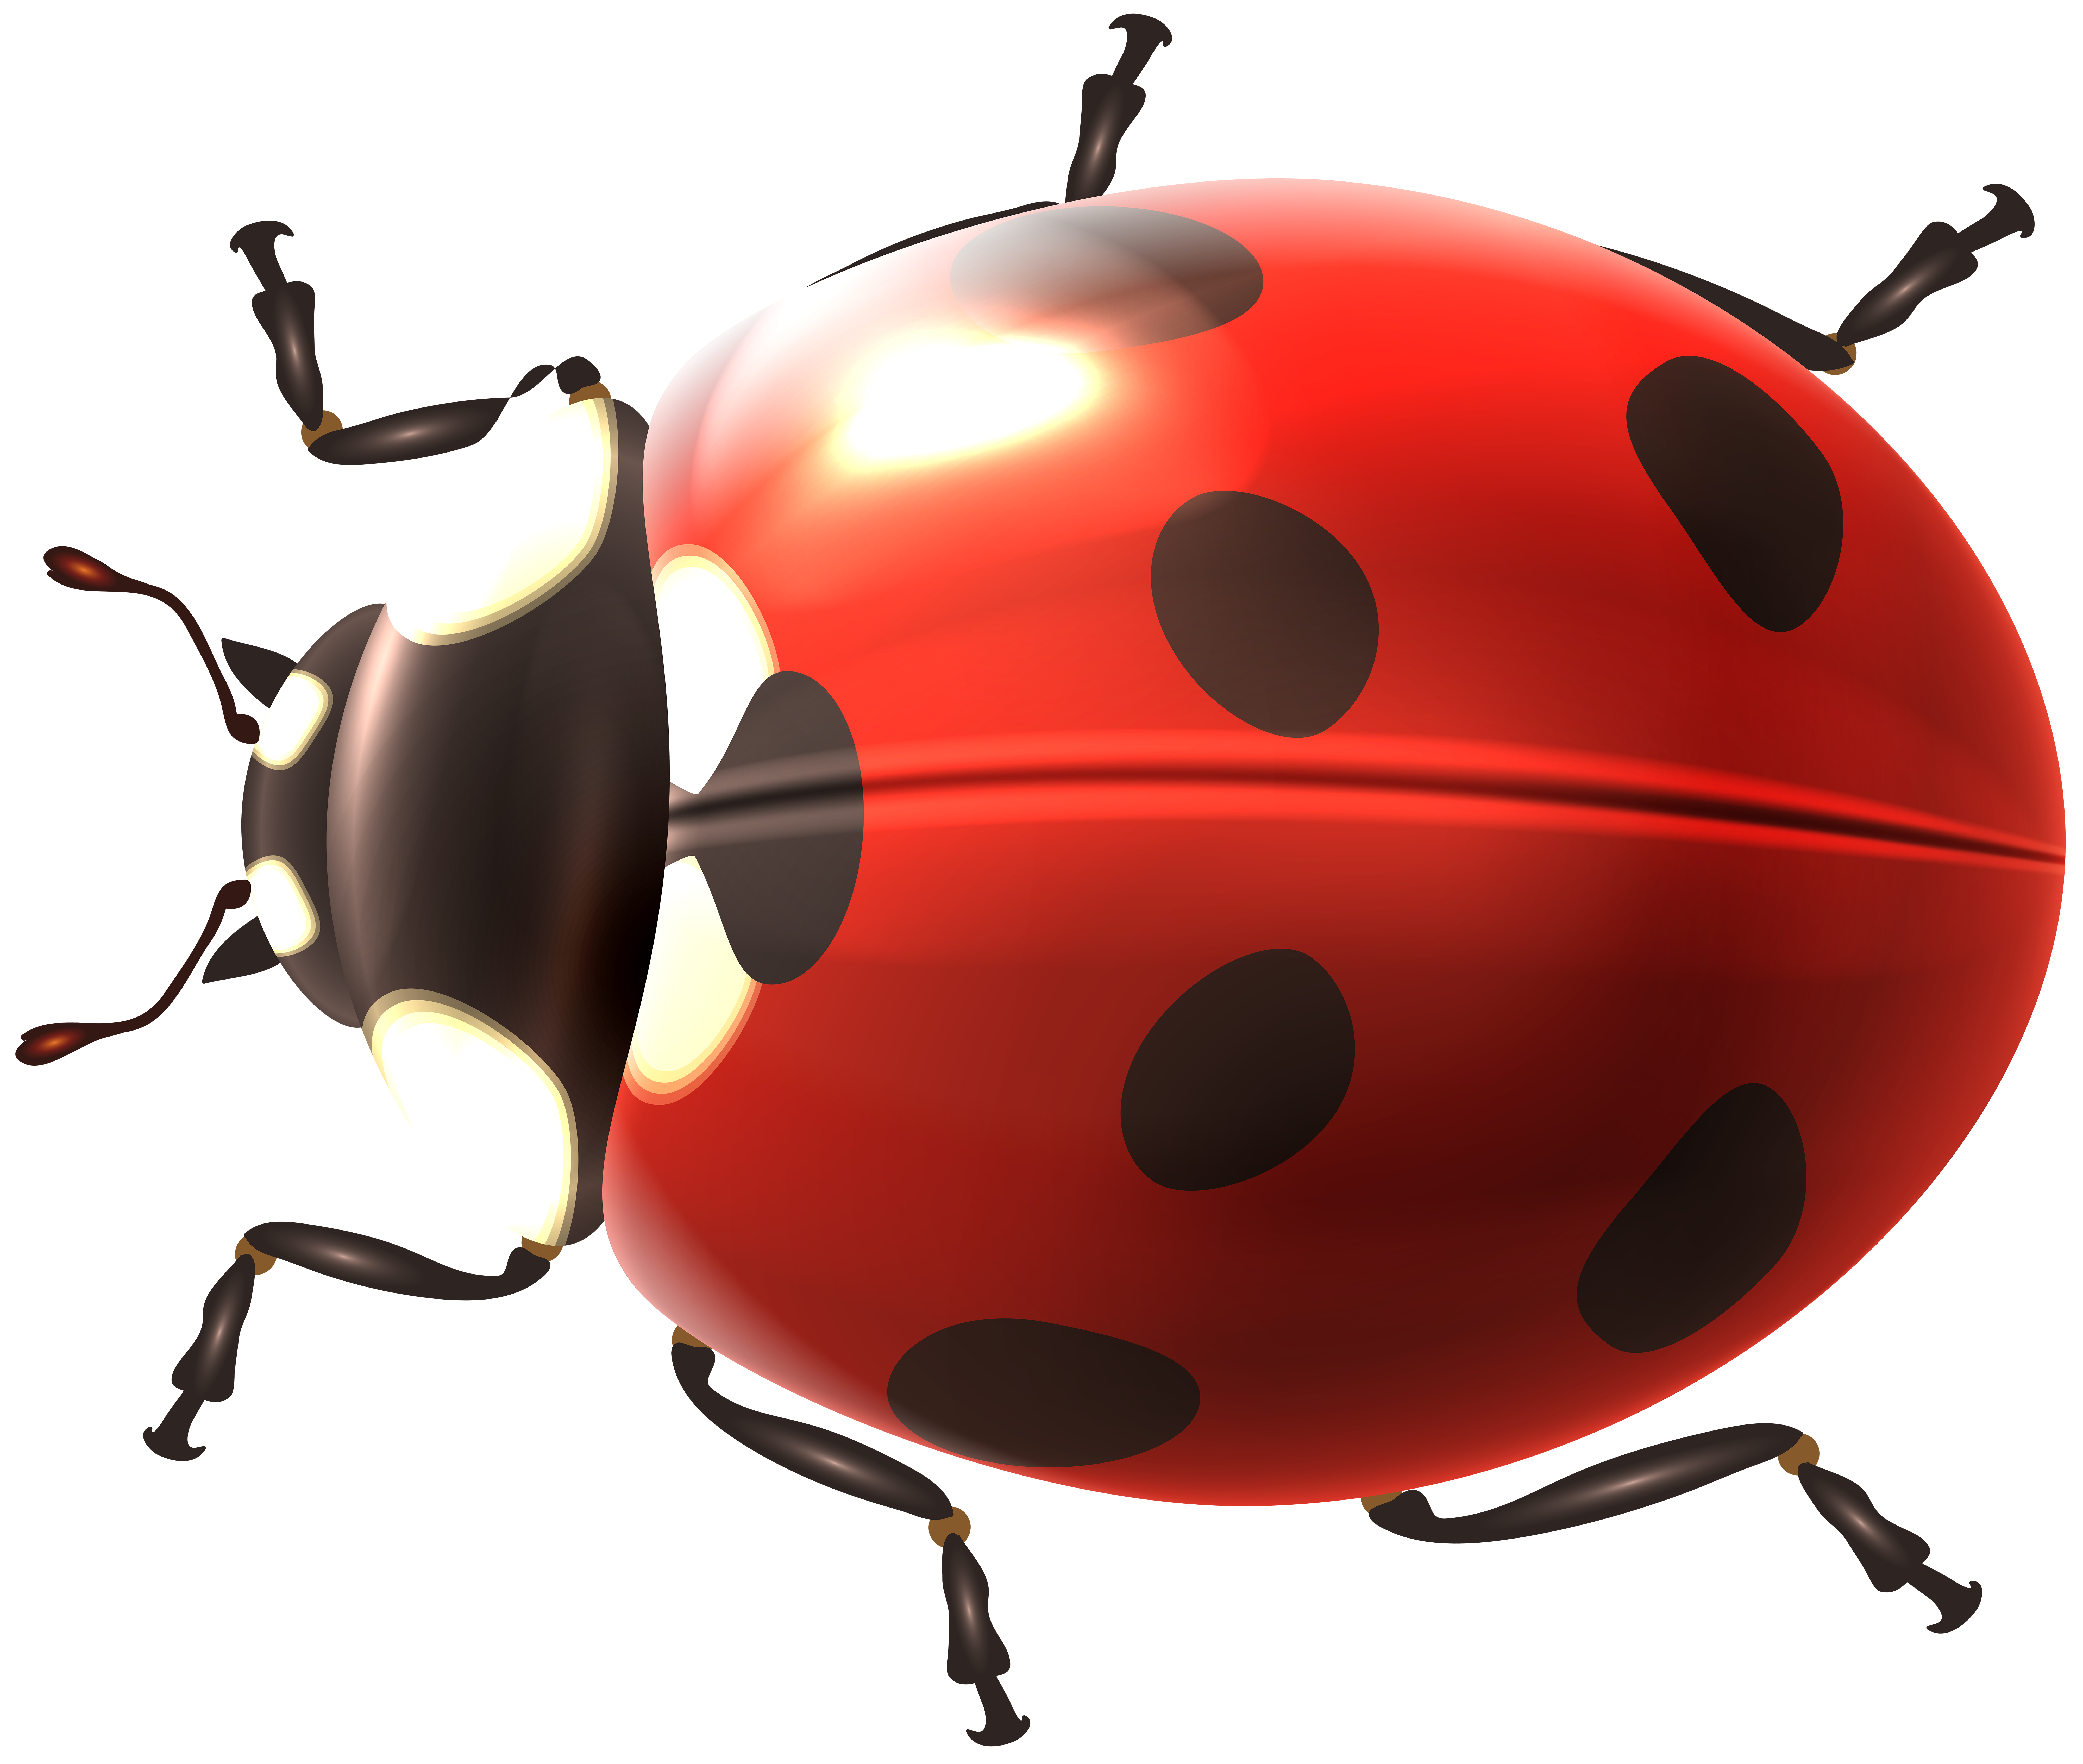 Ladybug PNG Clip Art - Best WEB Clipart